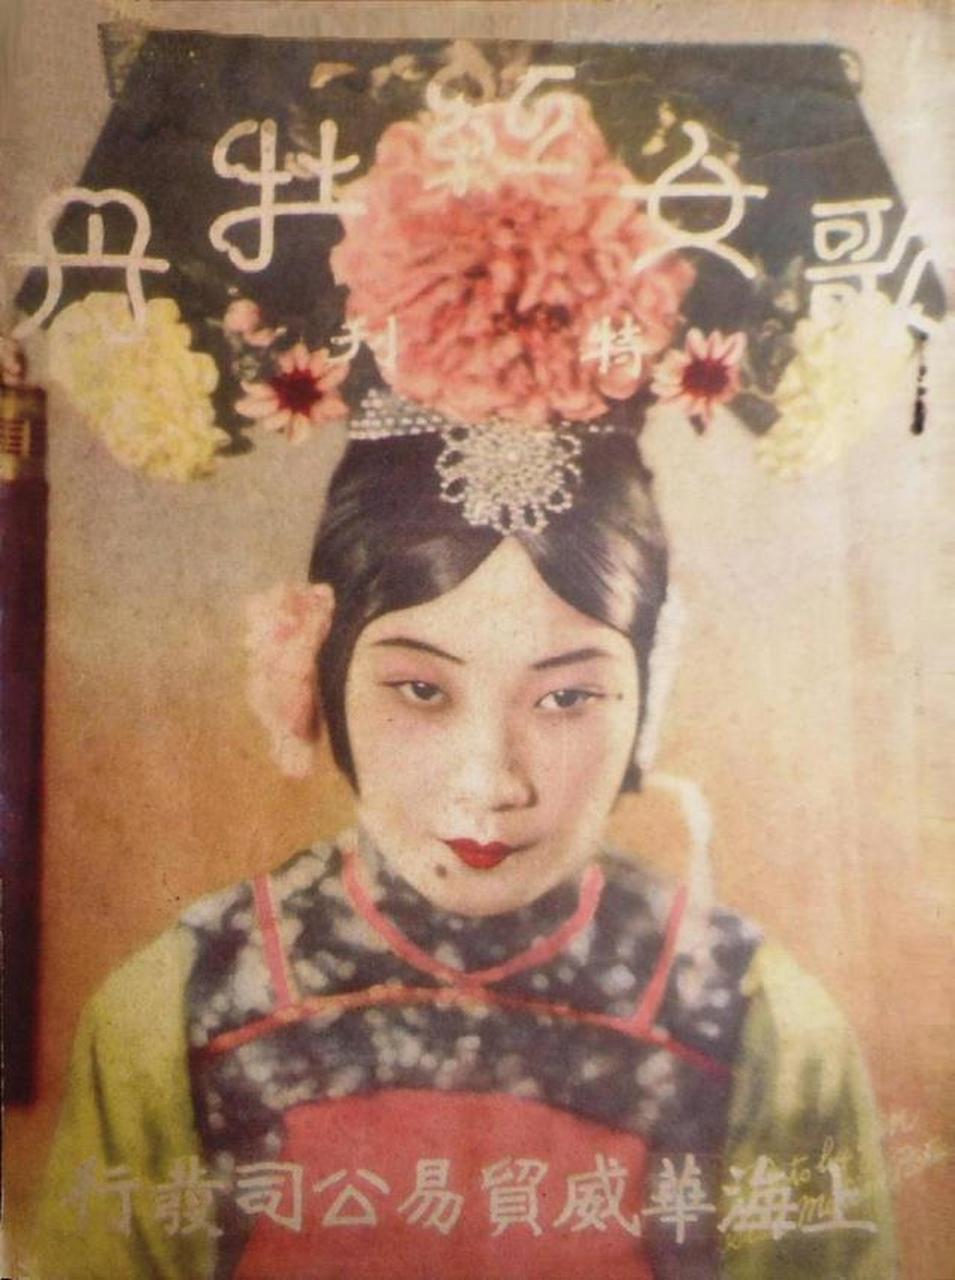 1931年3月15日,我国第一部有声电影《歌女红牡丹》正式上映